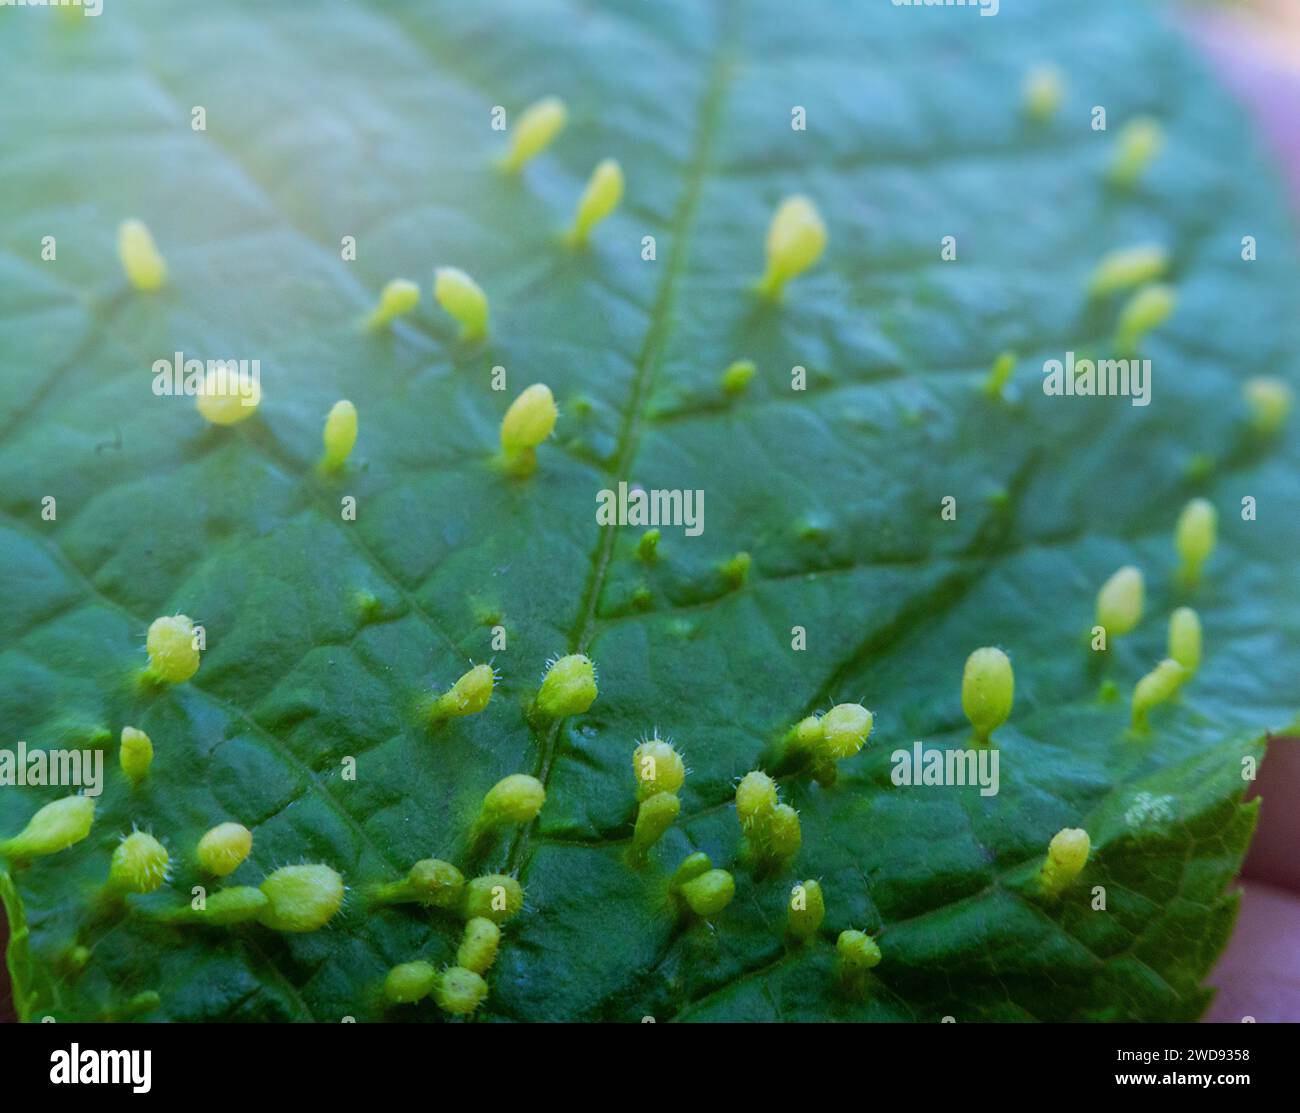 Blasenmilben (Eriophyes sp., Eriophyoidea) galles. Pflanzenfresser mikroskopisch kleine Zecken, Pflanzenschädlinge. Durch das Absaugen von Pflanzensäften wird gewebedef verursacht Stockfoto